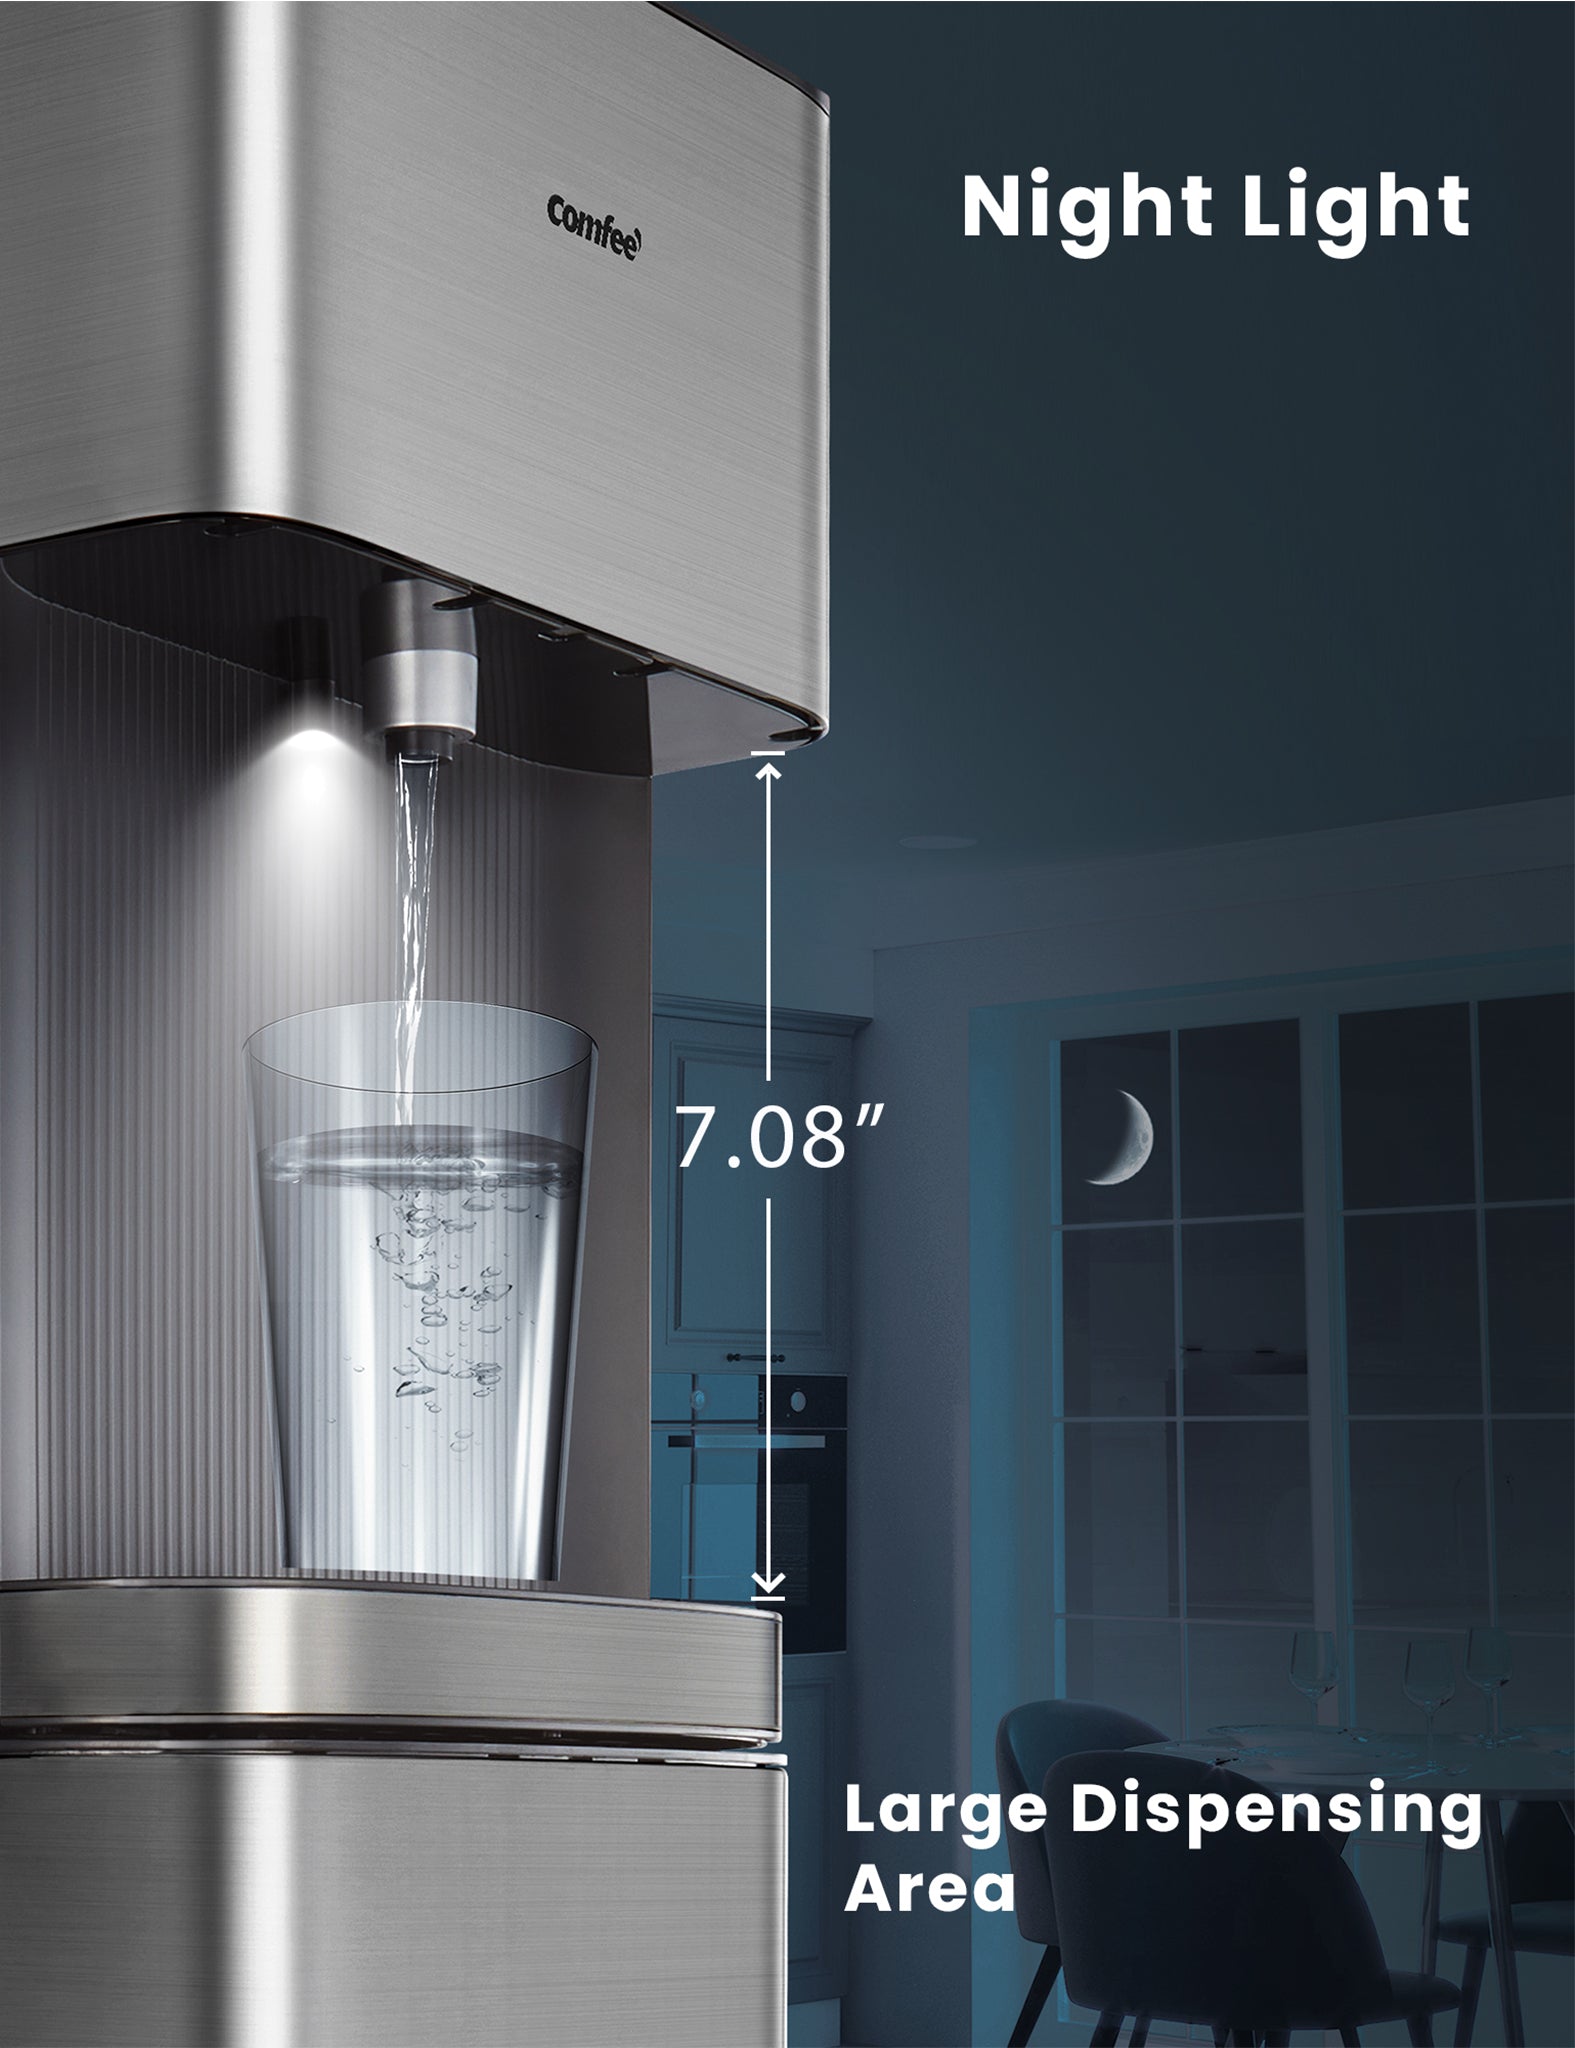 Function of Bottom Loading Water Dispenser